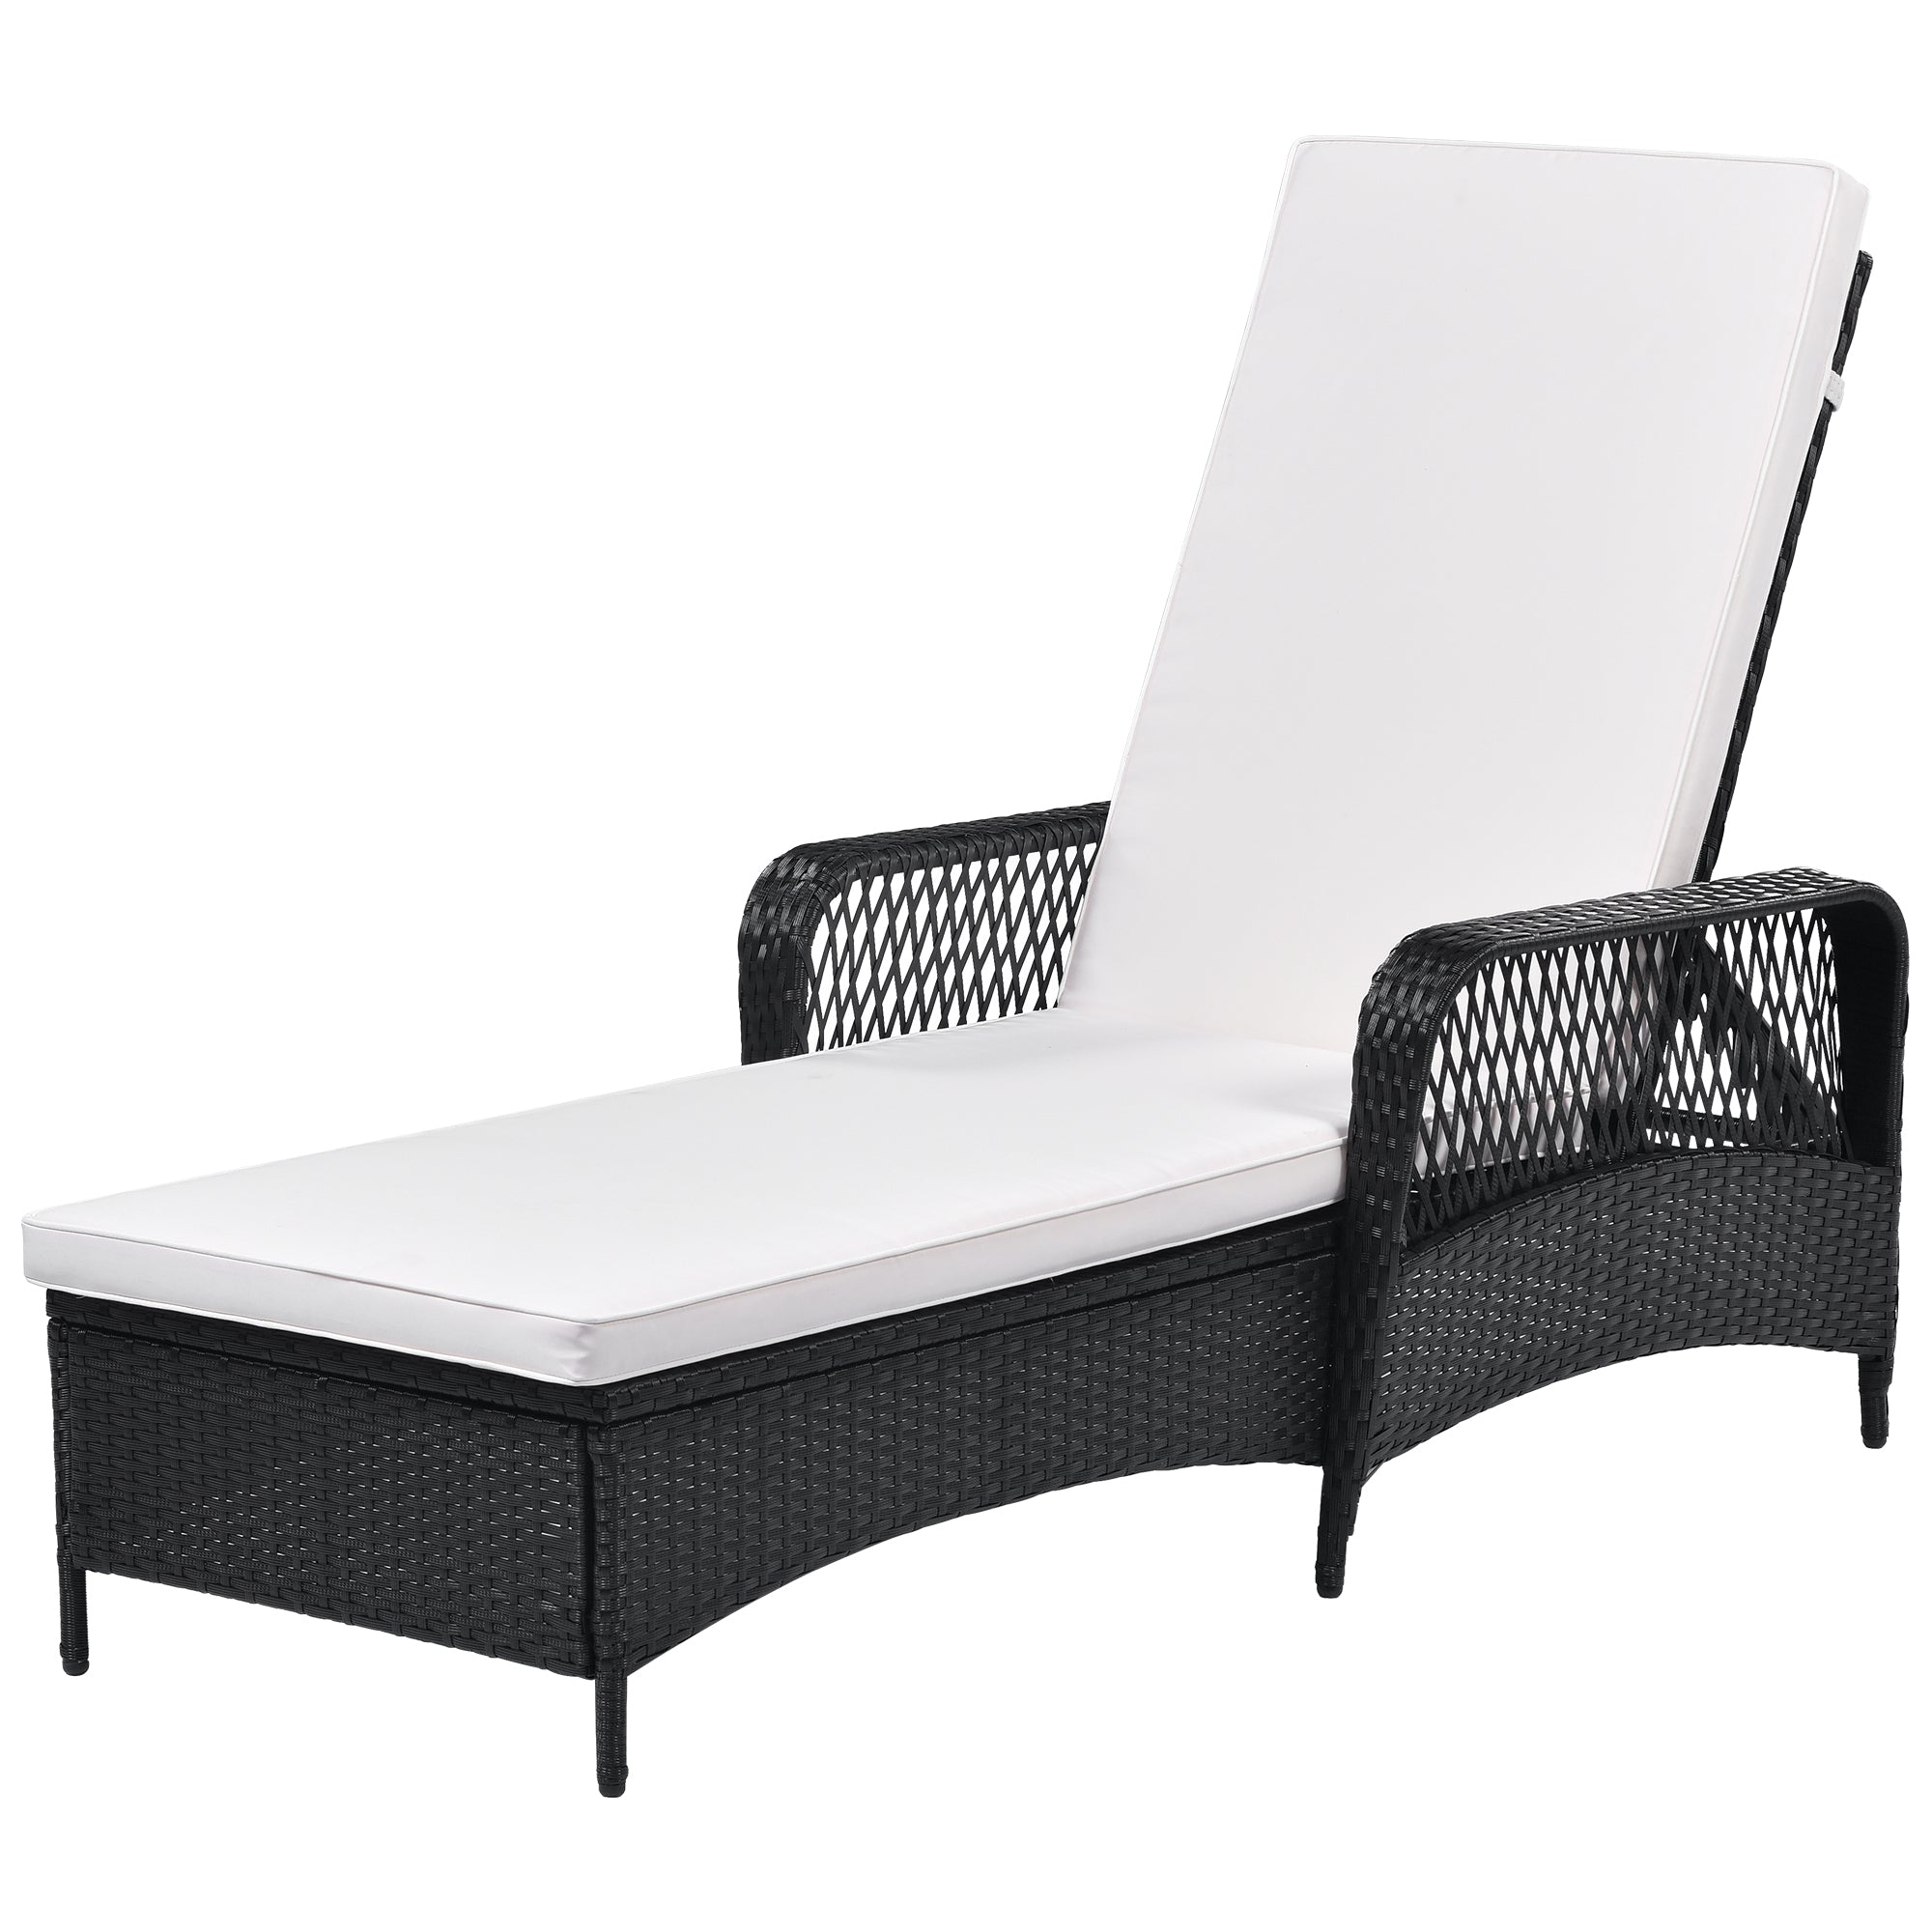 Outdoor patio pool PE rattan wicker chair wicker sun lounger, Adjustable backrest, beige cushion, Black wiker (1 set)-Boyel Living